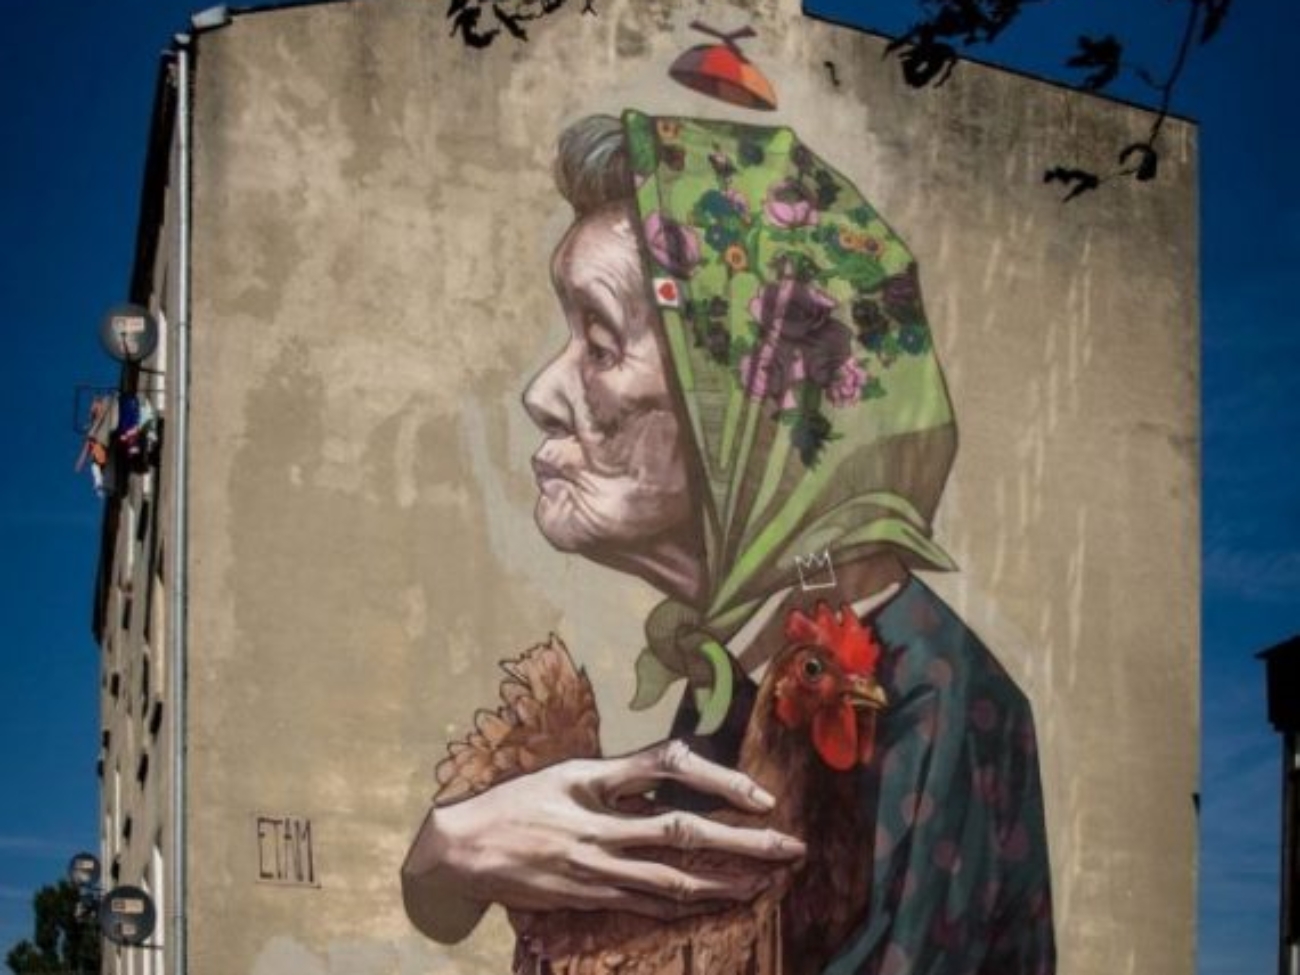 Łódzki mural - Kobieta z kurczakiem. Autor ETAM CREW